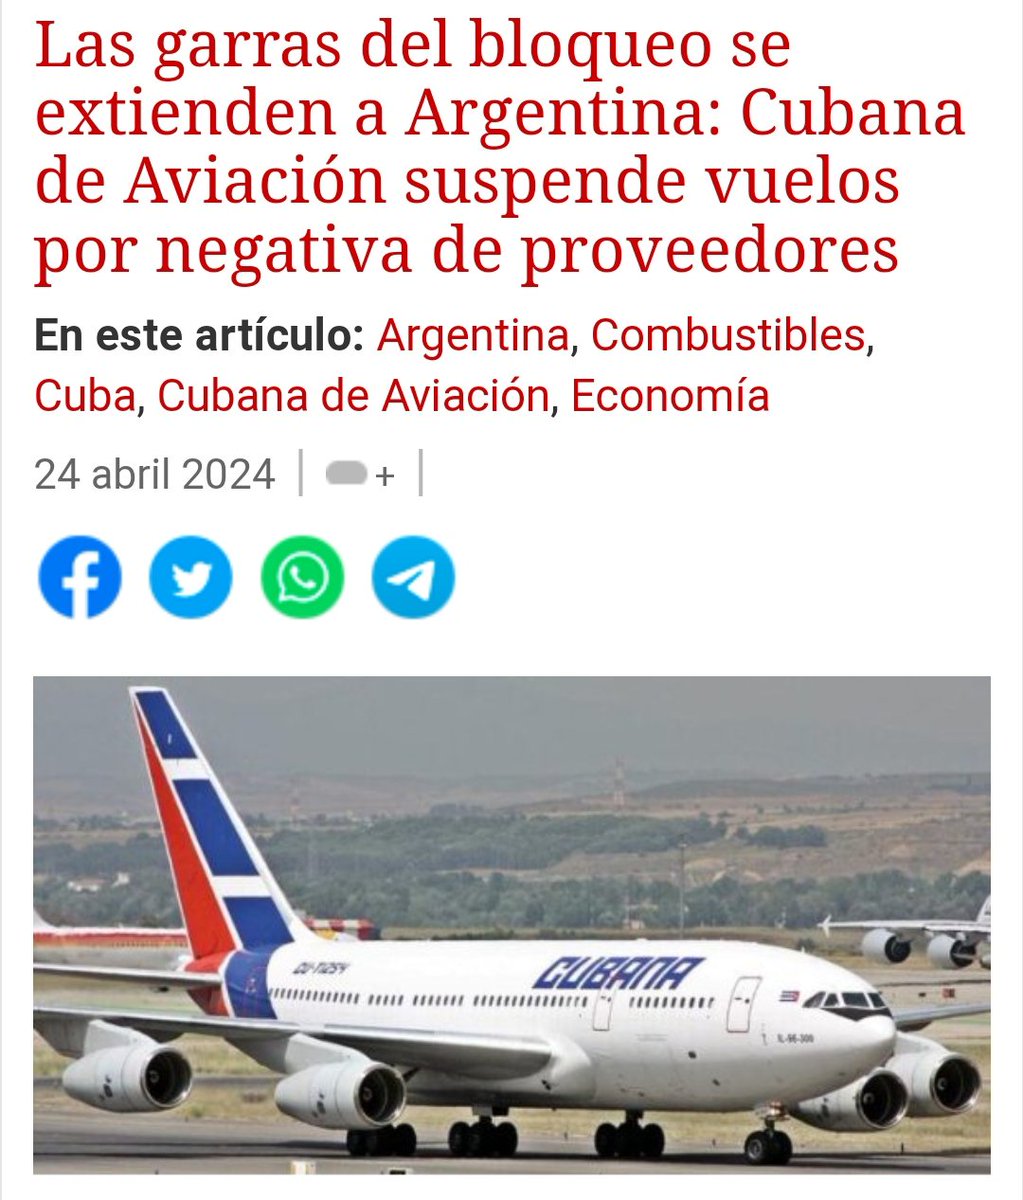 #ACTUALIDAD📰

Cubana de Aviación, S.A. anuncia la cancelación de los vuelos CU360/CU361 programados para el 23 y 24 de abril.

Abro 🧵 con los detalles